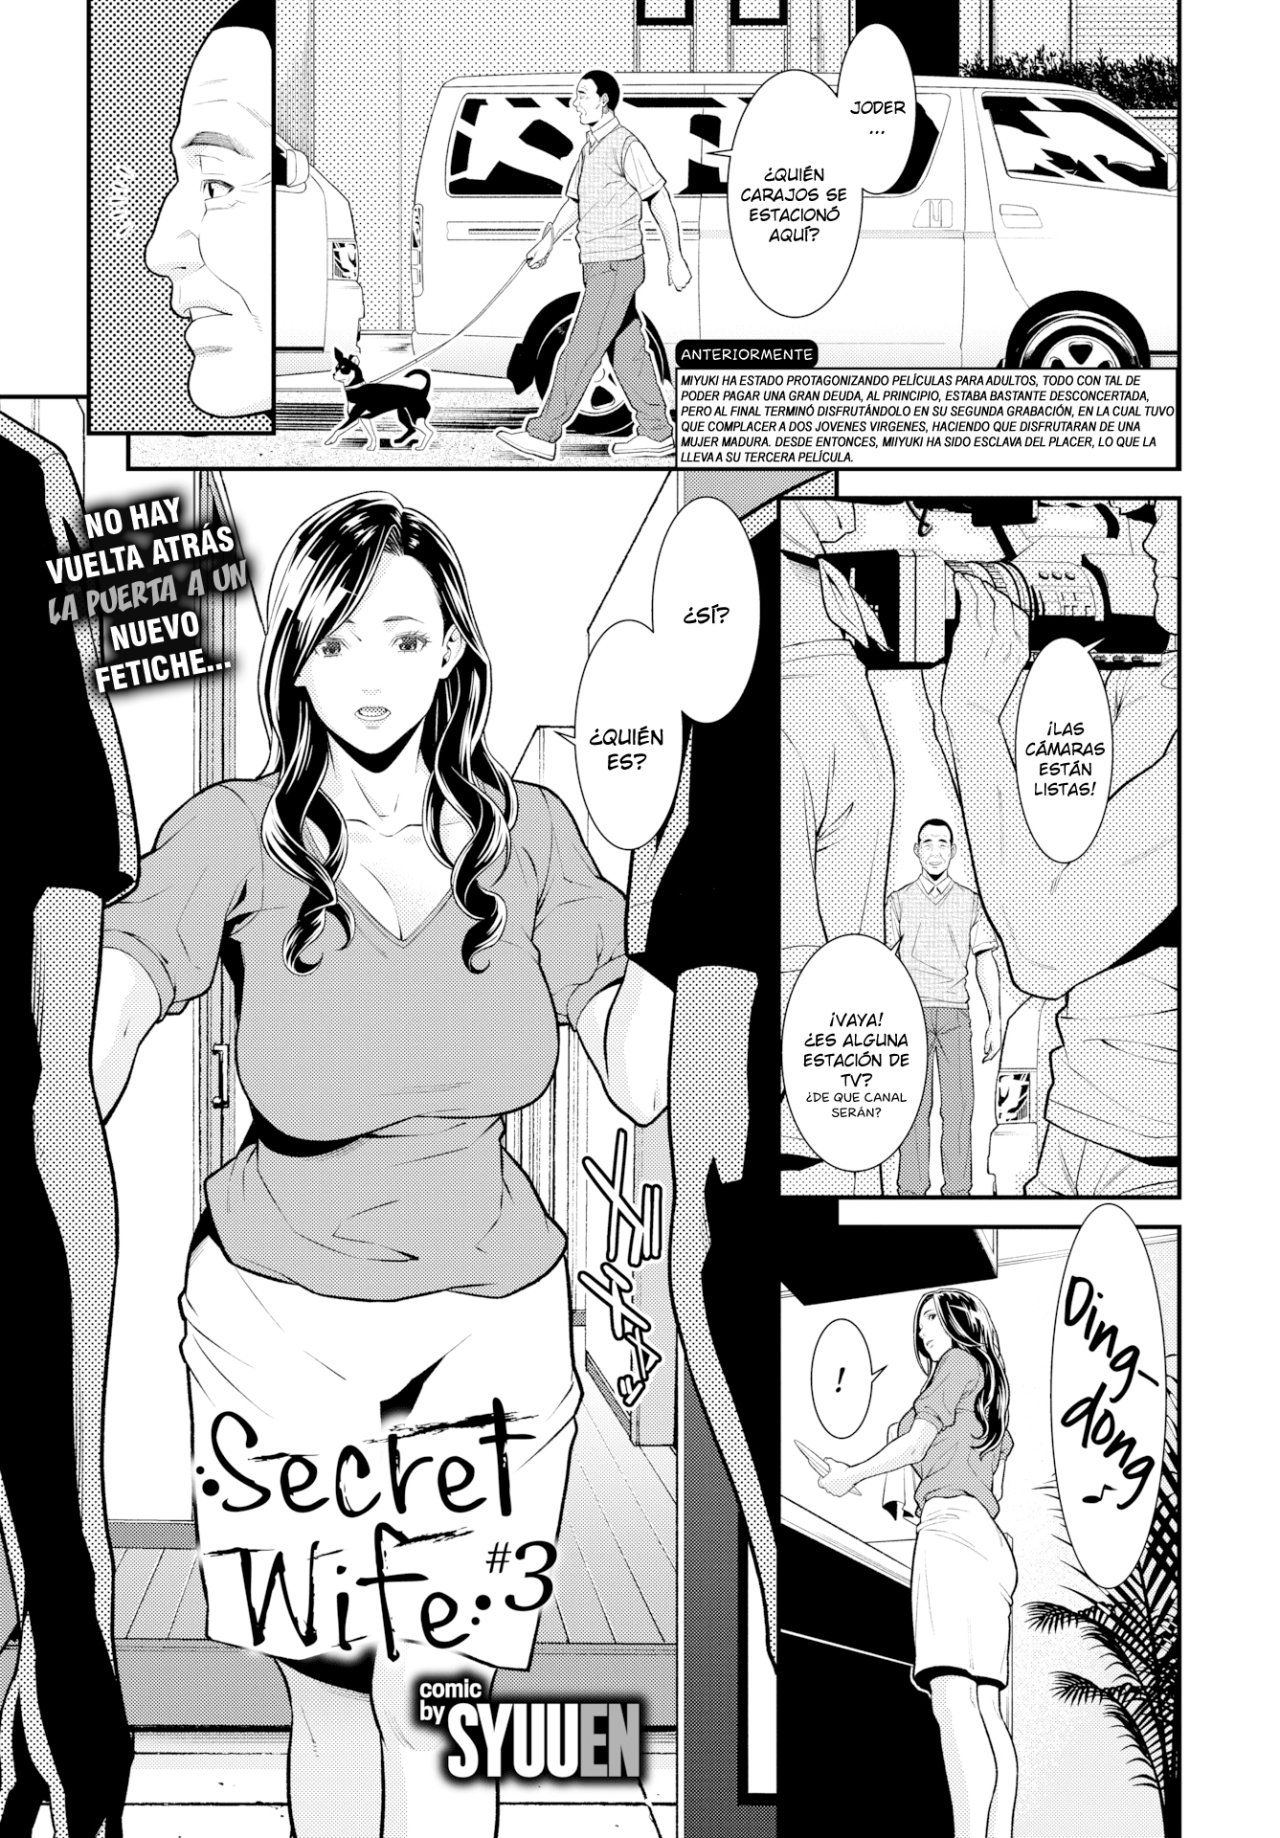 Secret Wife #3 (sin censura) - 0